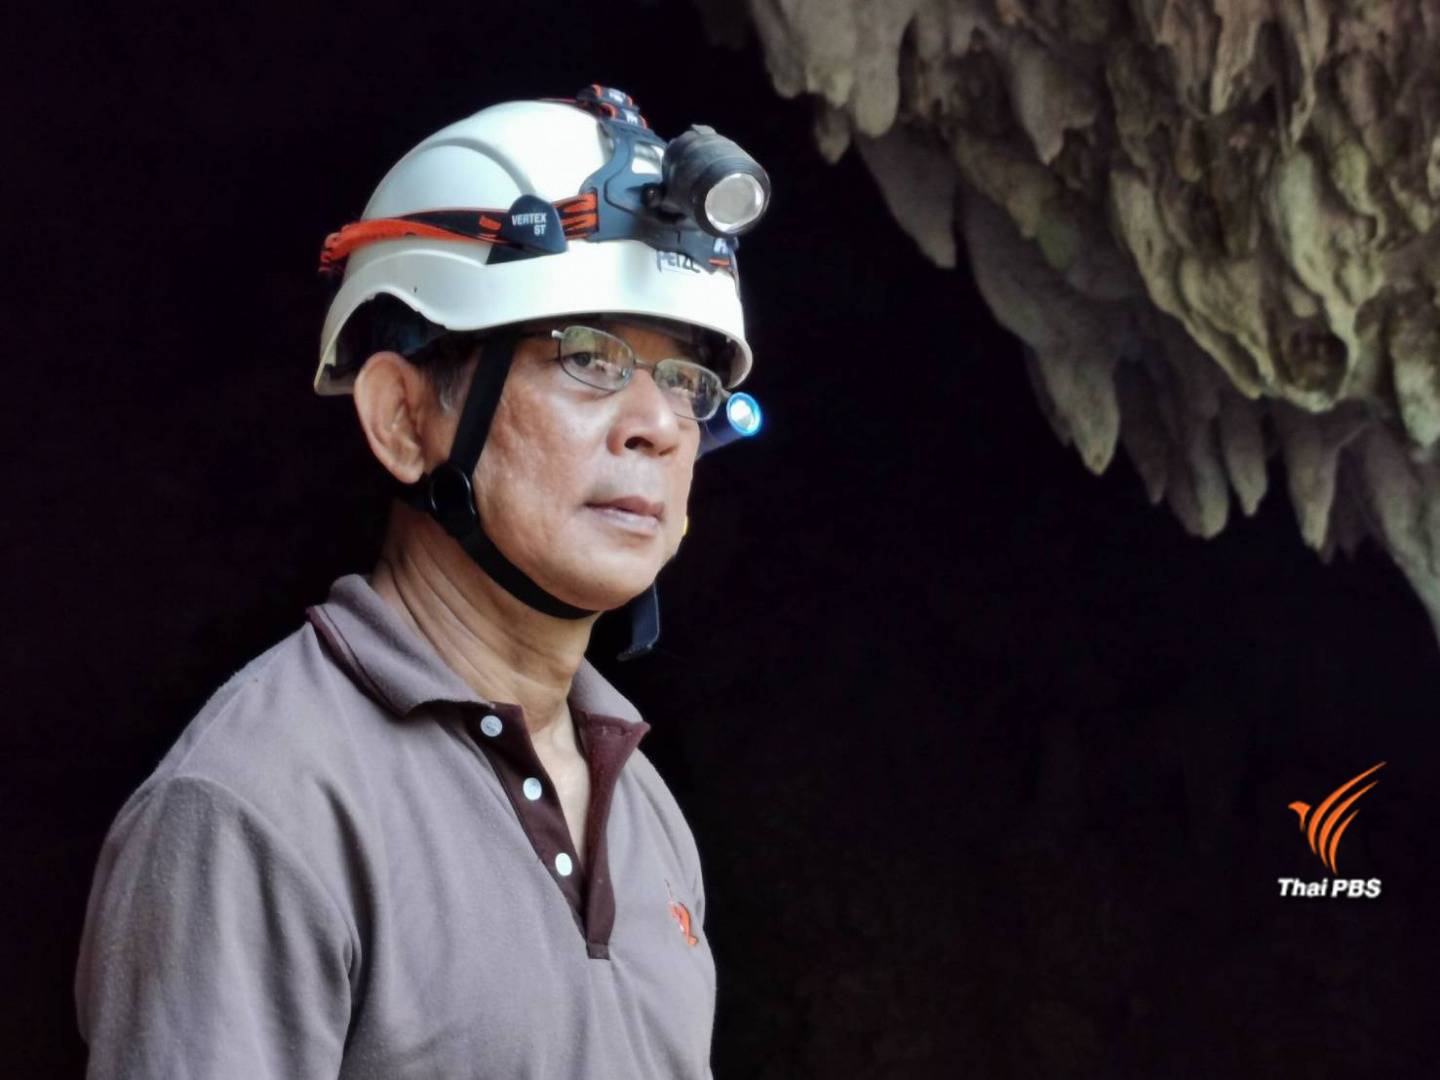 นายชัยพร ศิริพรไพบูลย์ ผู้เชี่ยวชาญด้านถ้ำ และหนึ่งในคณะกรรมการบริหารจัดการถ้ำแห่งชาติ